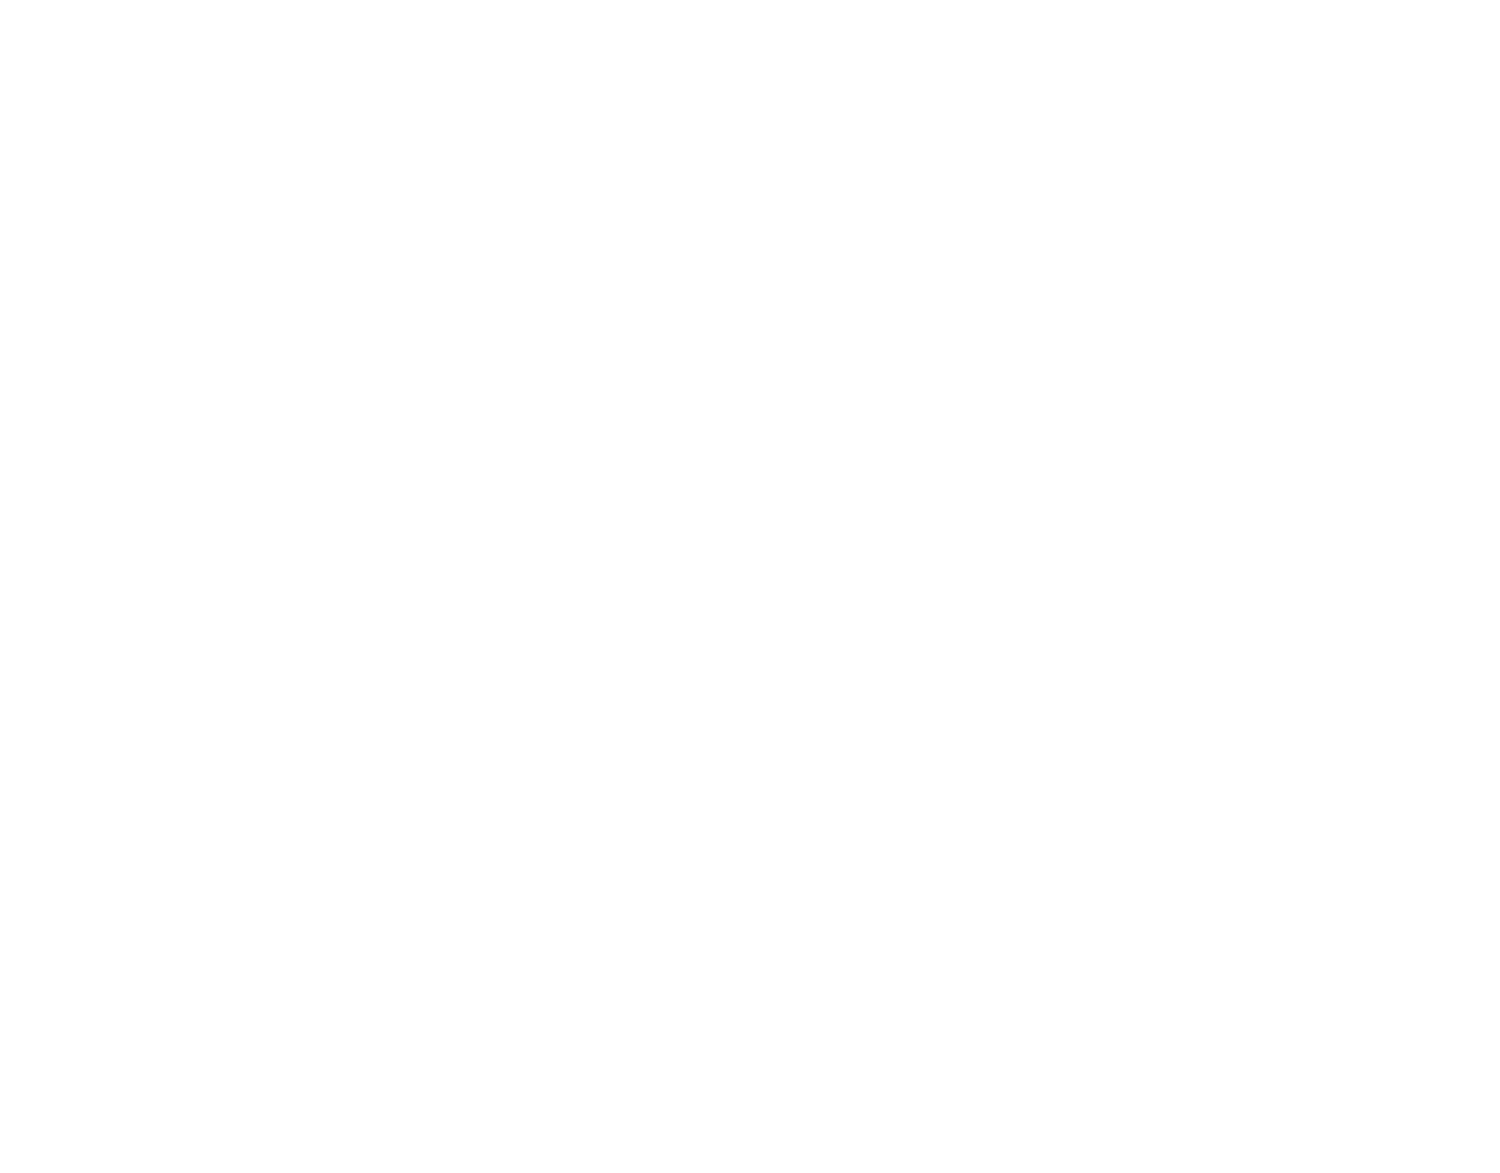 Martin’s Bar